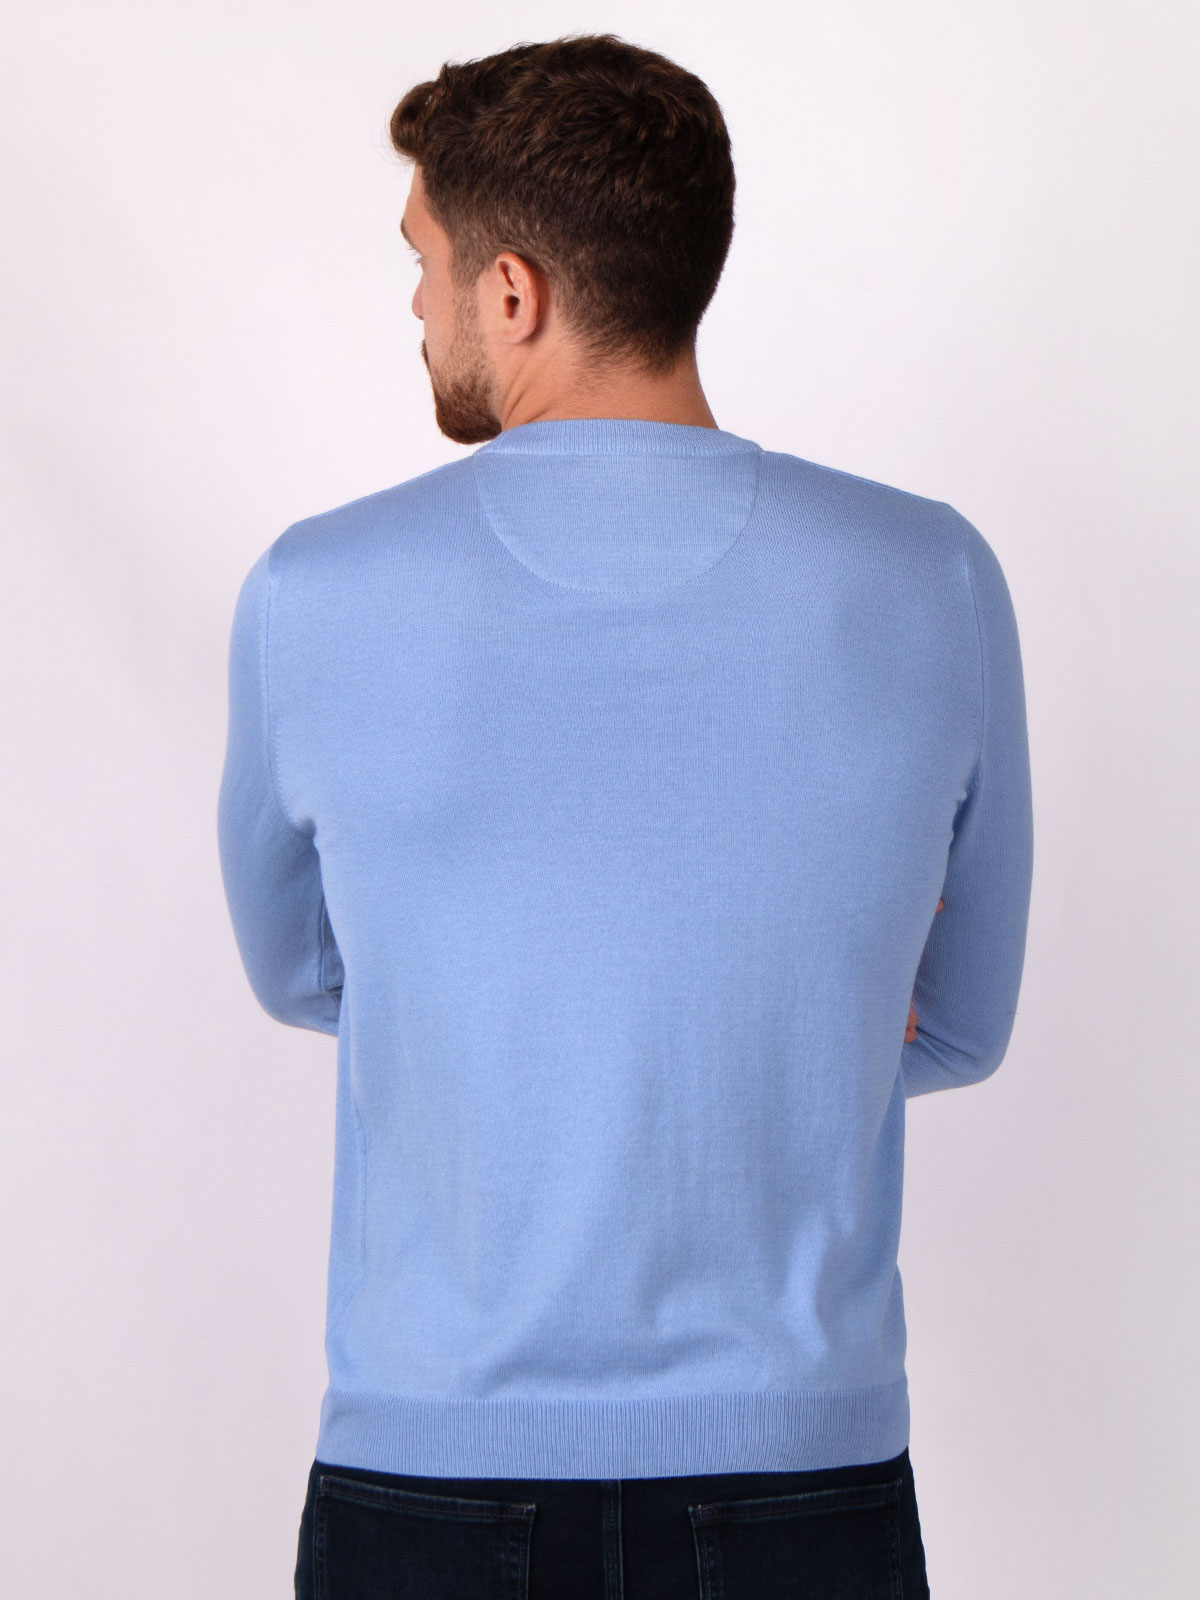 Model de bază pulover albastru - 35288 € 27.00 img3